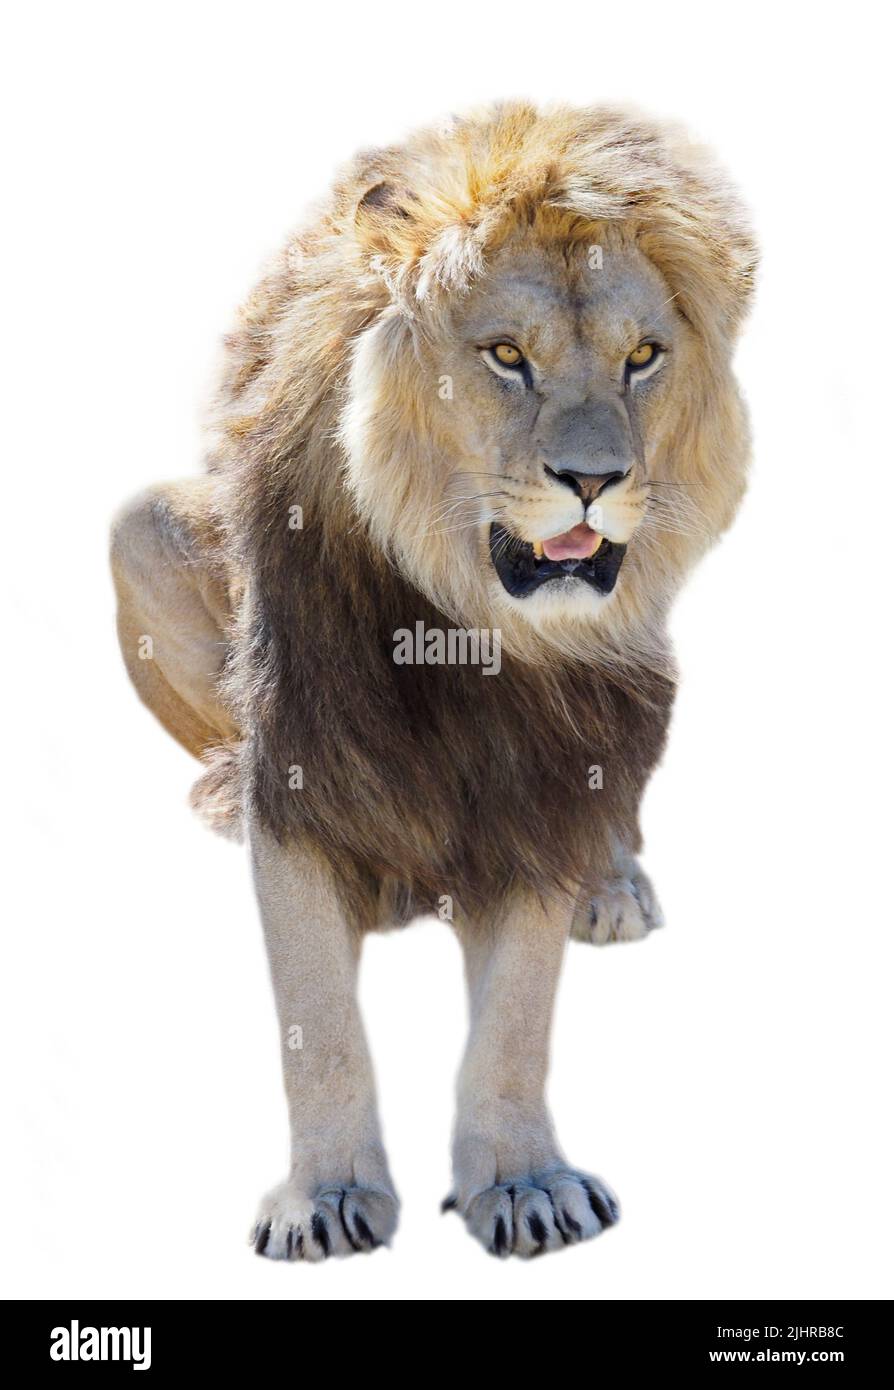 Leone visto dalla parte anteriore (Panthera leo) e attaccando la tua lingua, isolato su sfondo bianco Foto Stock